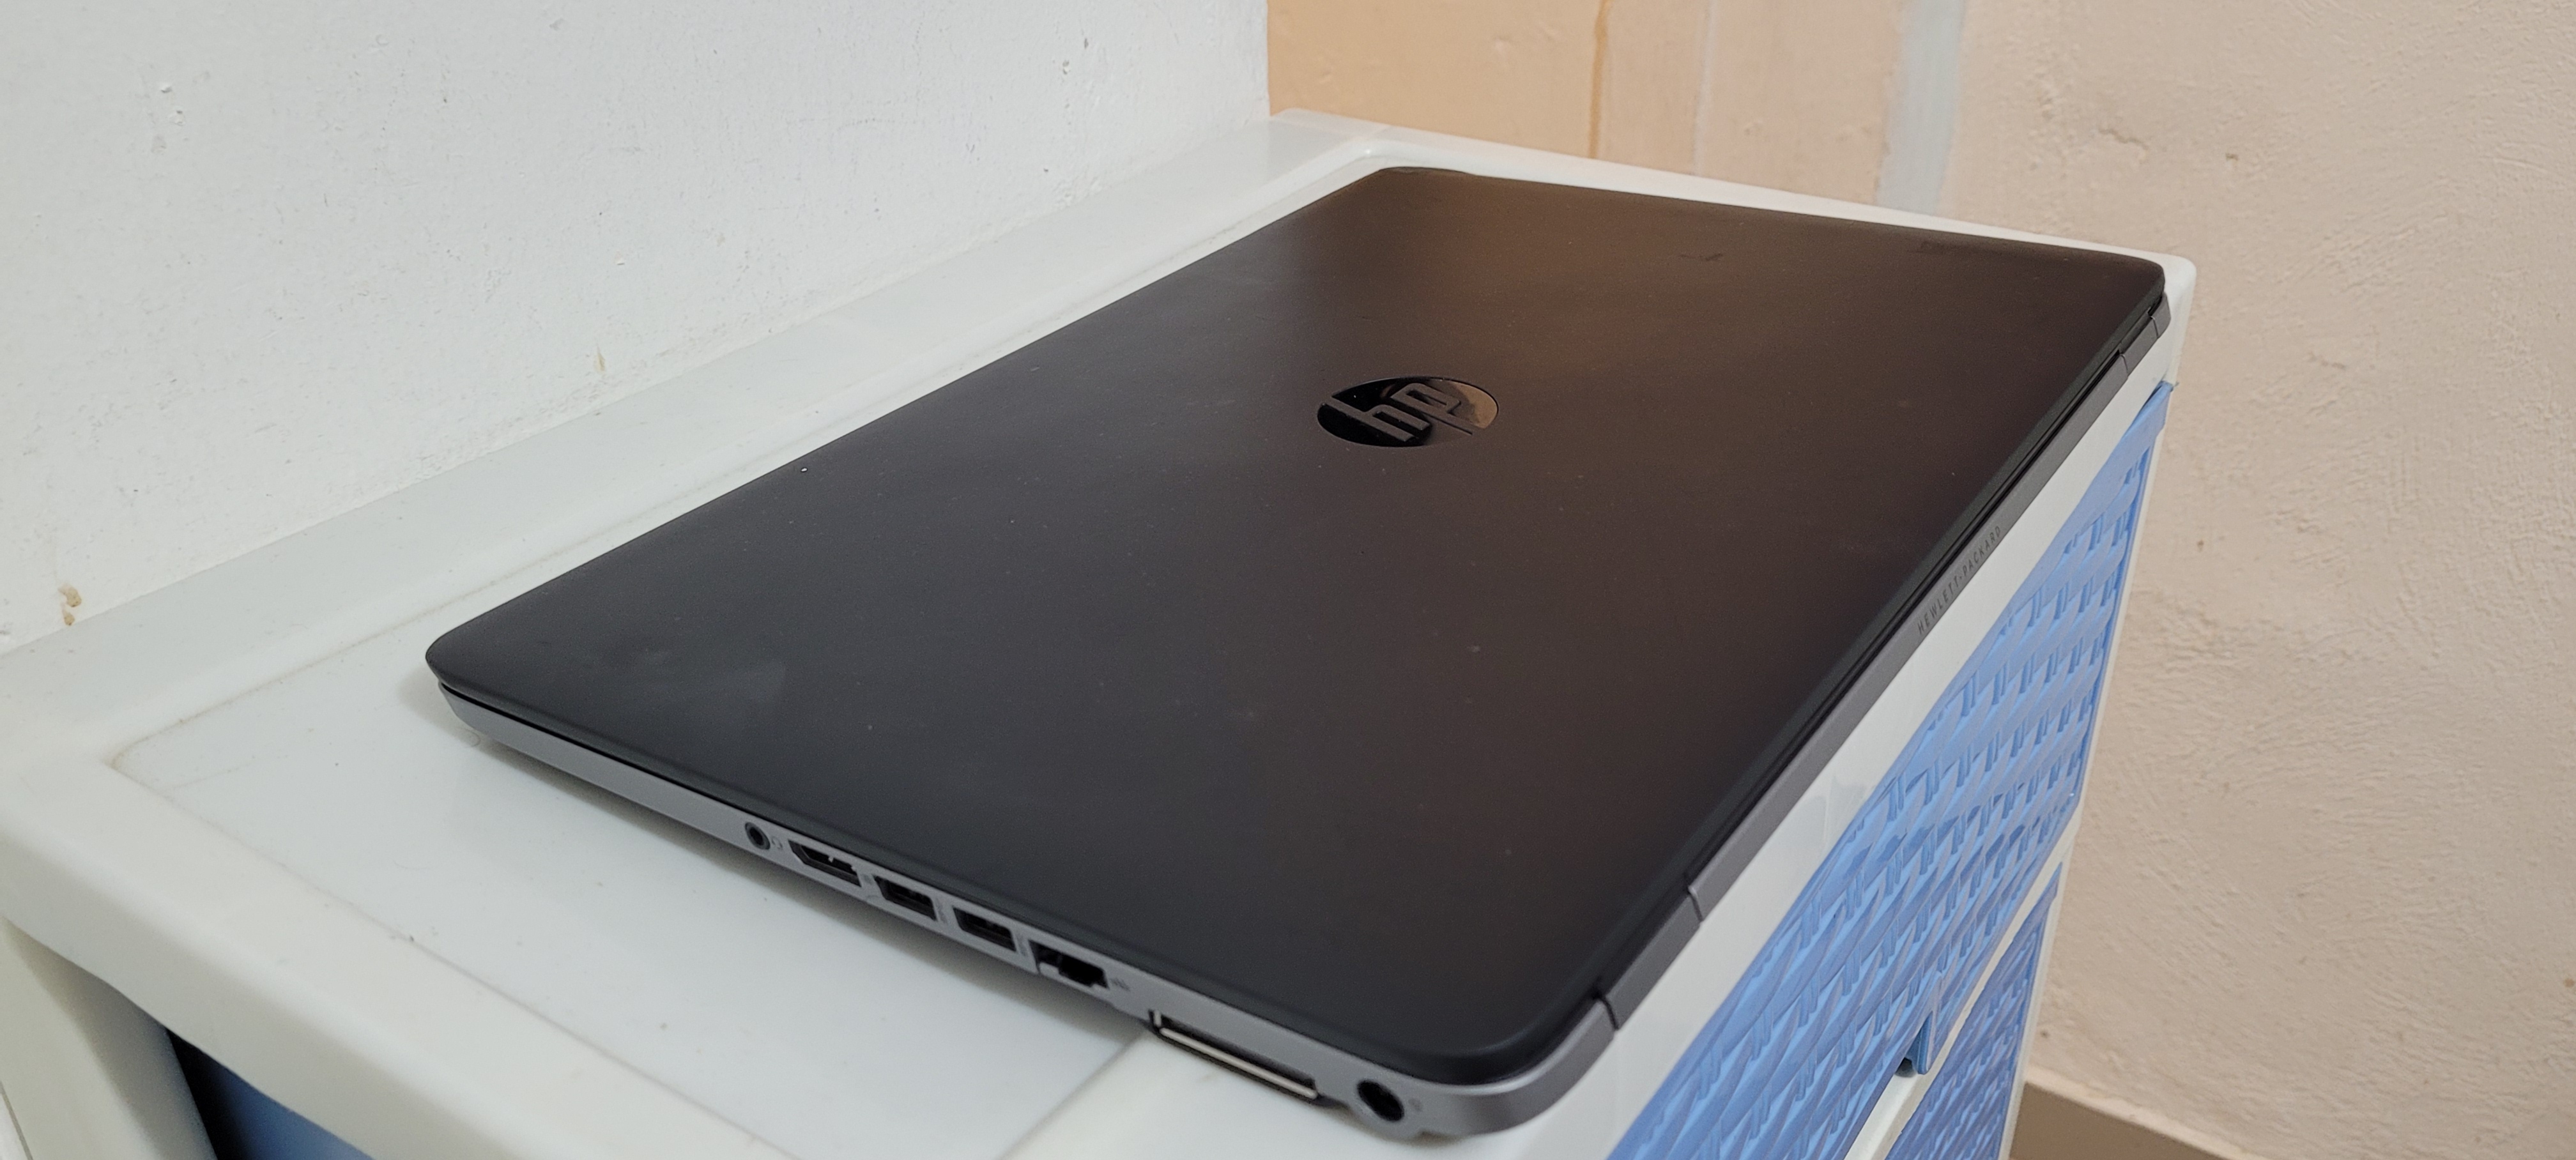 computadoras y laptops - laptop hp Slim 17 Pulg Core i5 Ram 8gb Disco 512gb SSD Solido 2